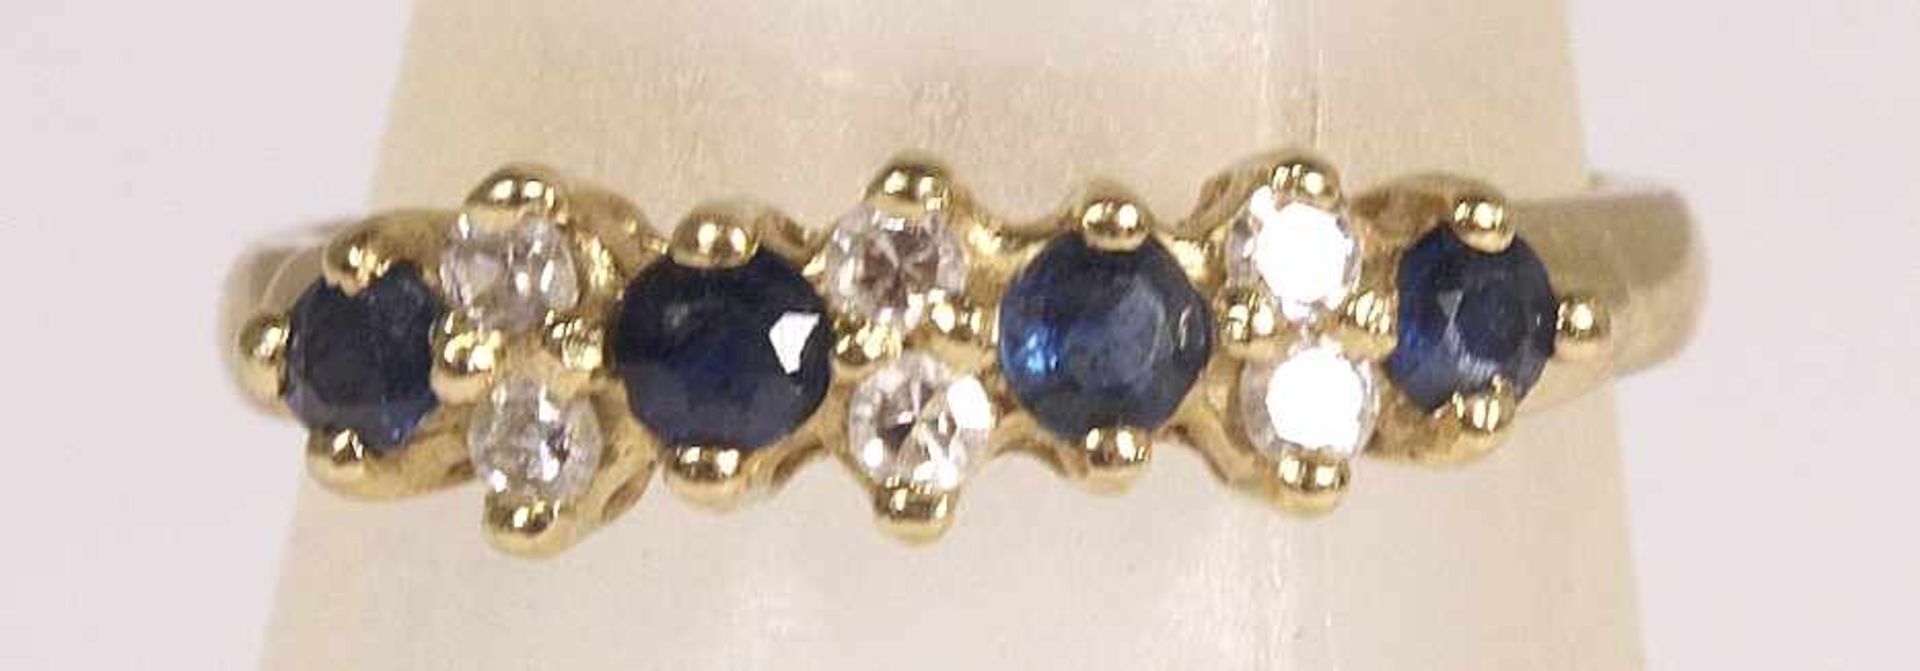 Damenring, GG 585, besetzt mit 4 Safiren, zus. ca. 0,60 ct., Farbe: dunkelblau, flankiertvon 6